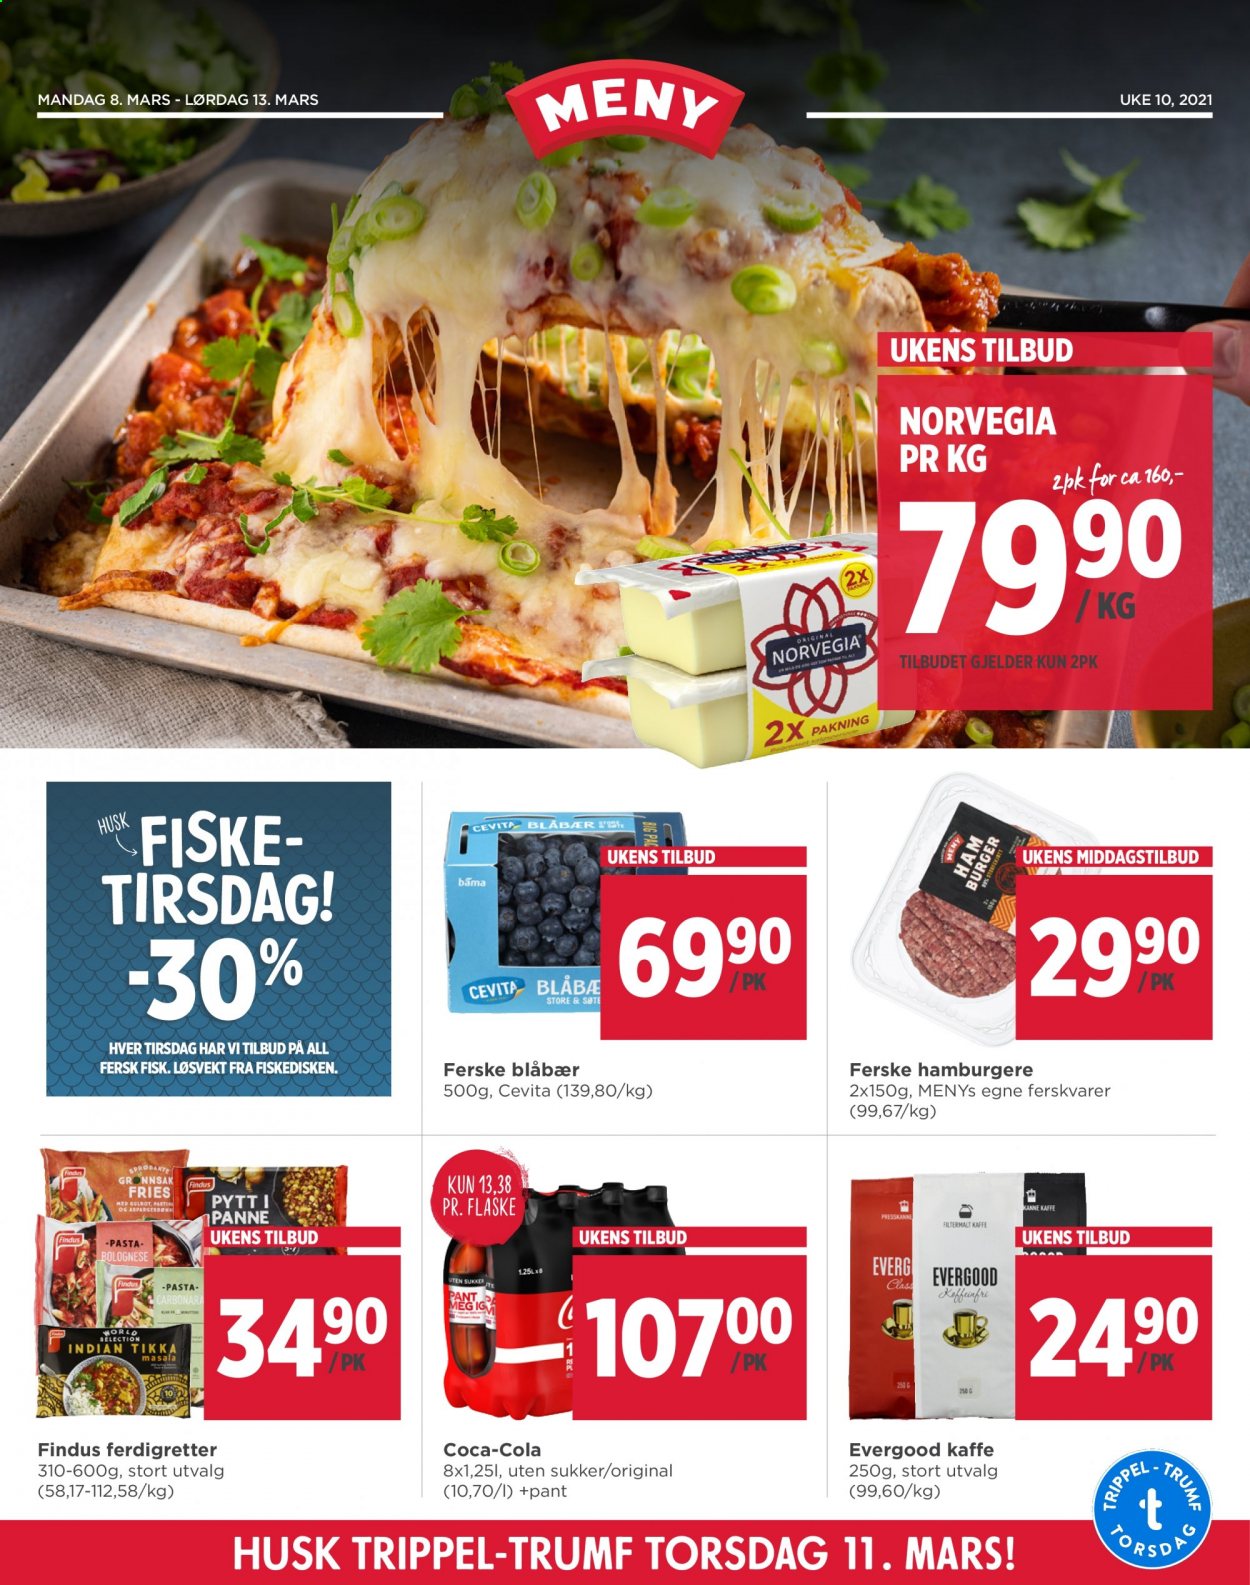 thumbnail - Kundeavis MENY - 8.3.2021 - 13.3.2021 - Produkter fra tilbudsaviser - blåbær, burger, fisk, pytt i panne, Norvegia, Findus, pasta, Coca-Cola. Side 1.